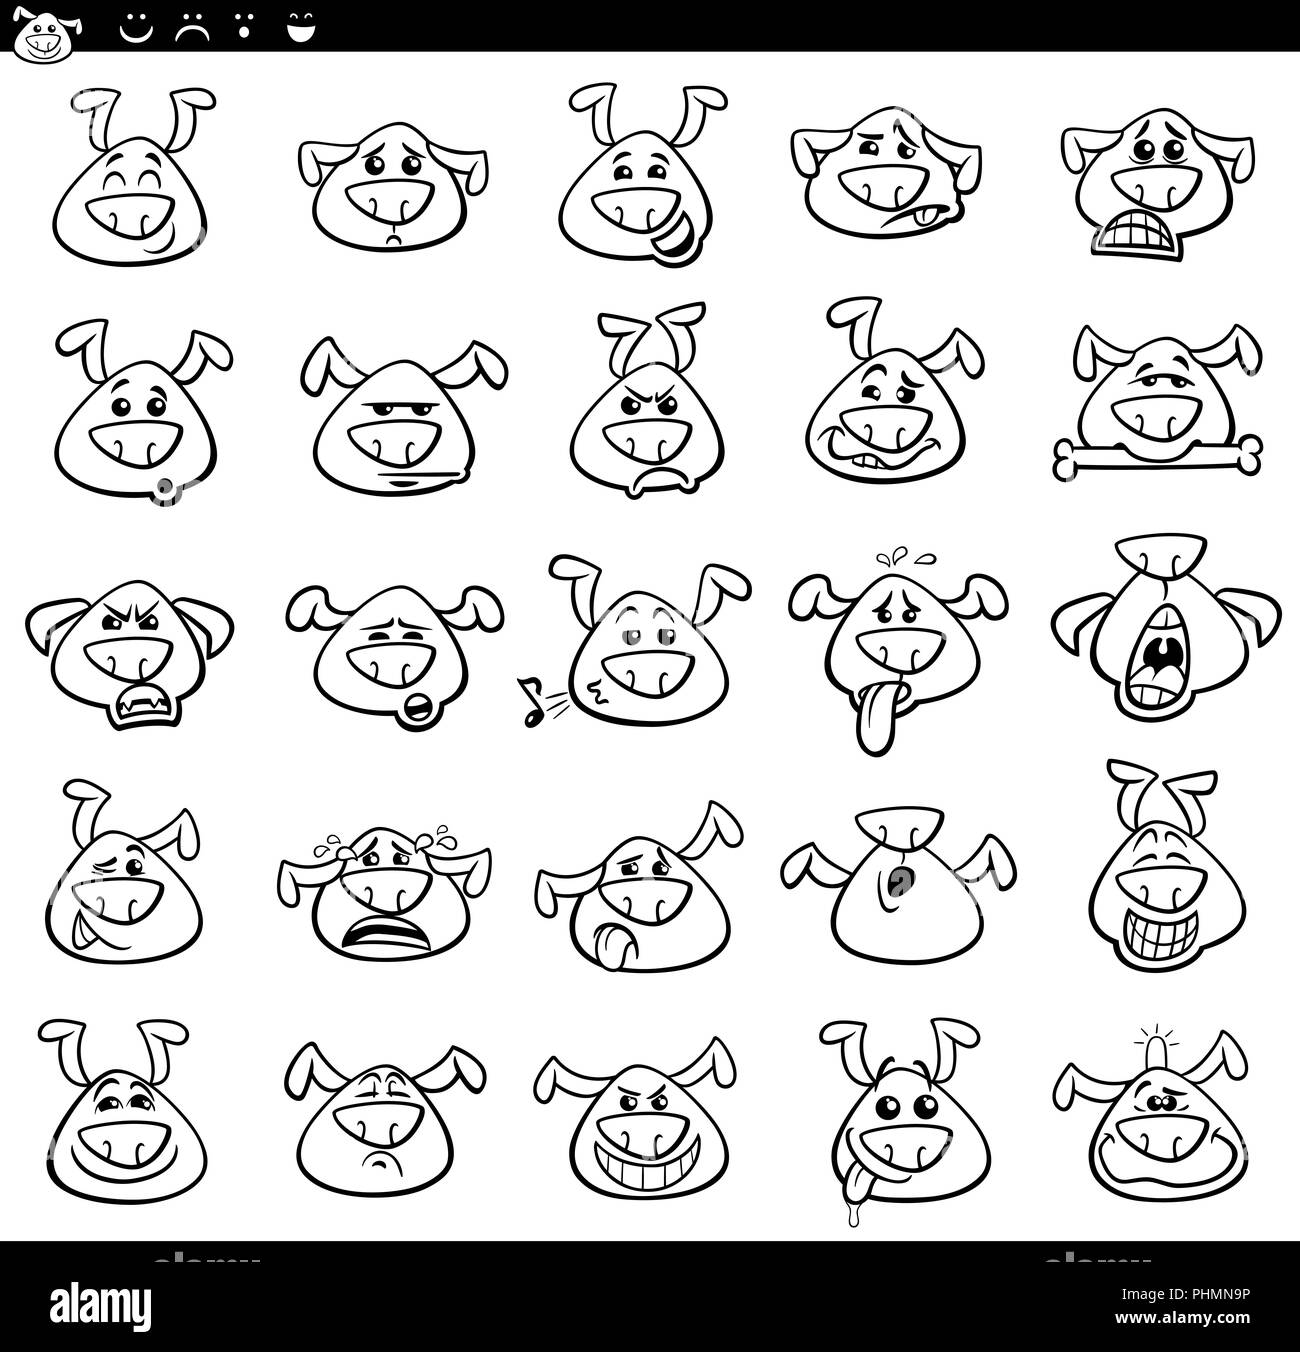 dog emoji icons cartoon illustration set Stock Photo